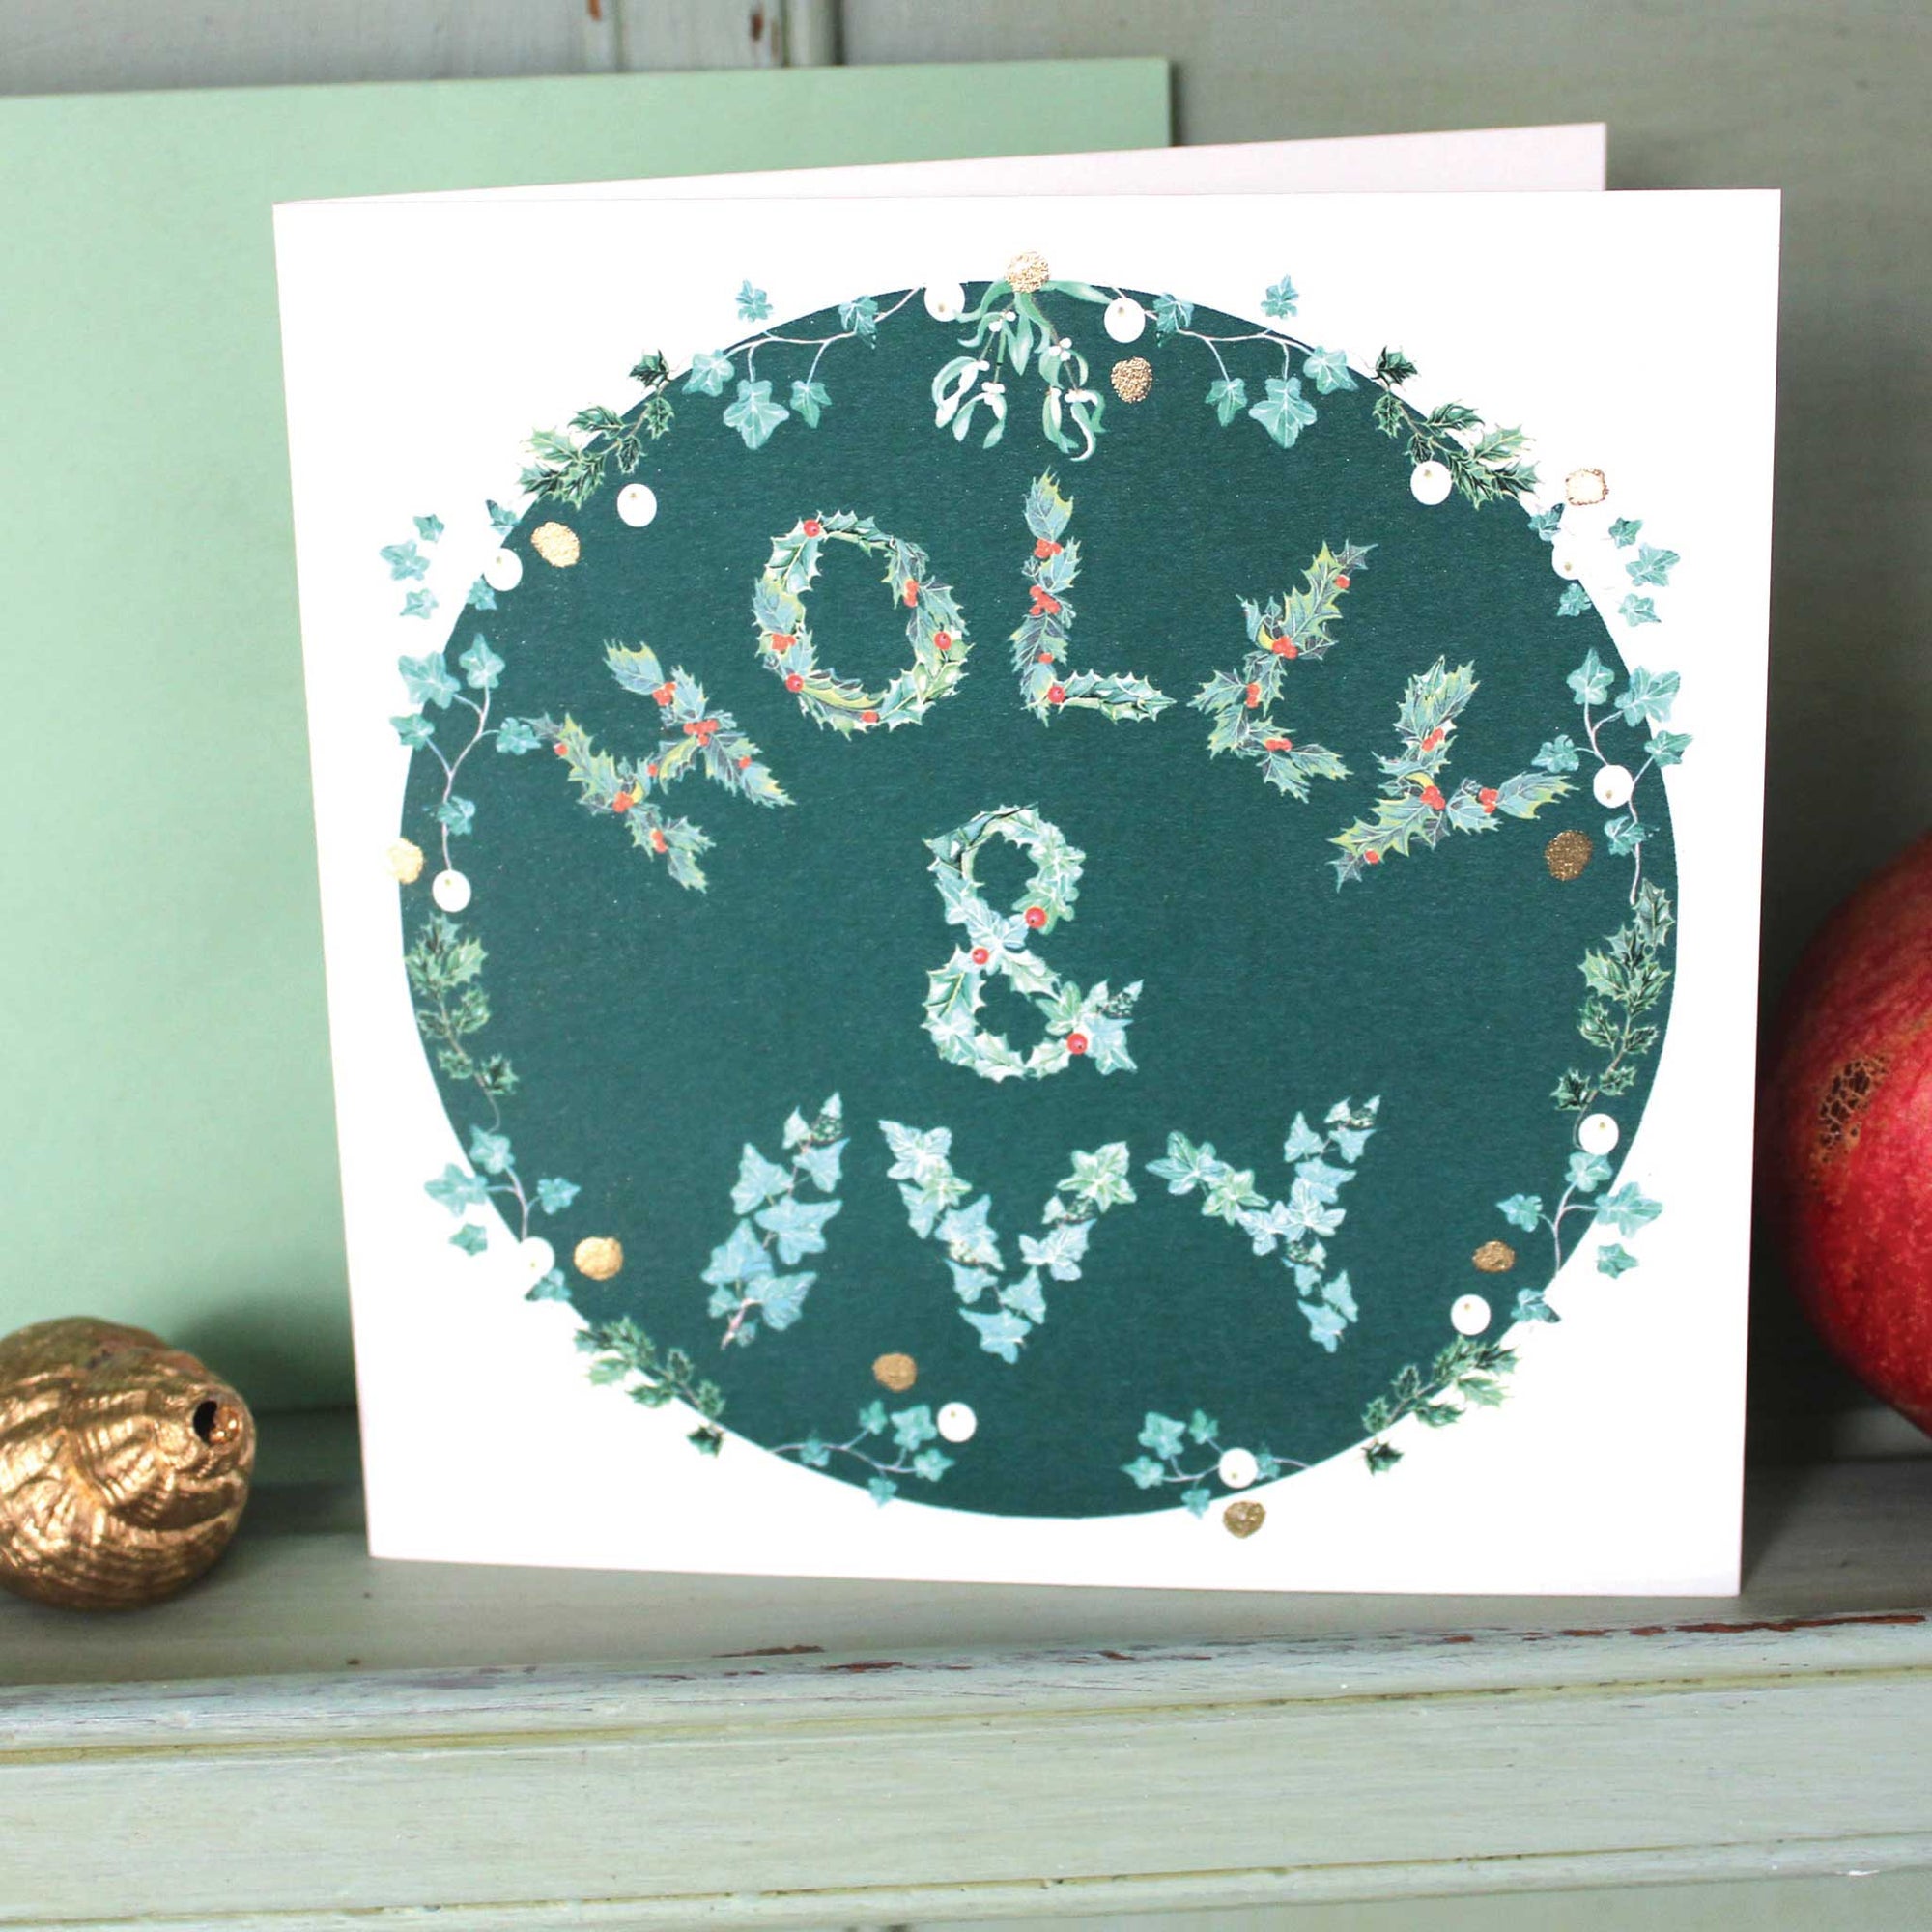 Holly & Ivy Glittery Christmas Card